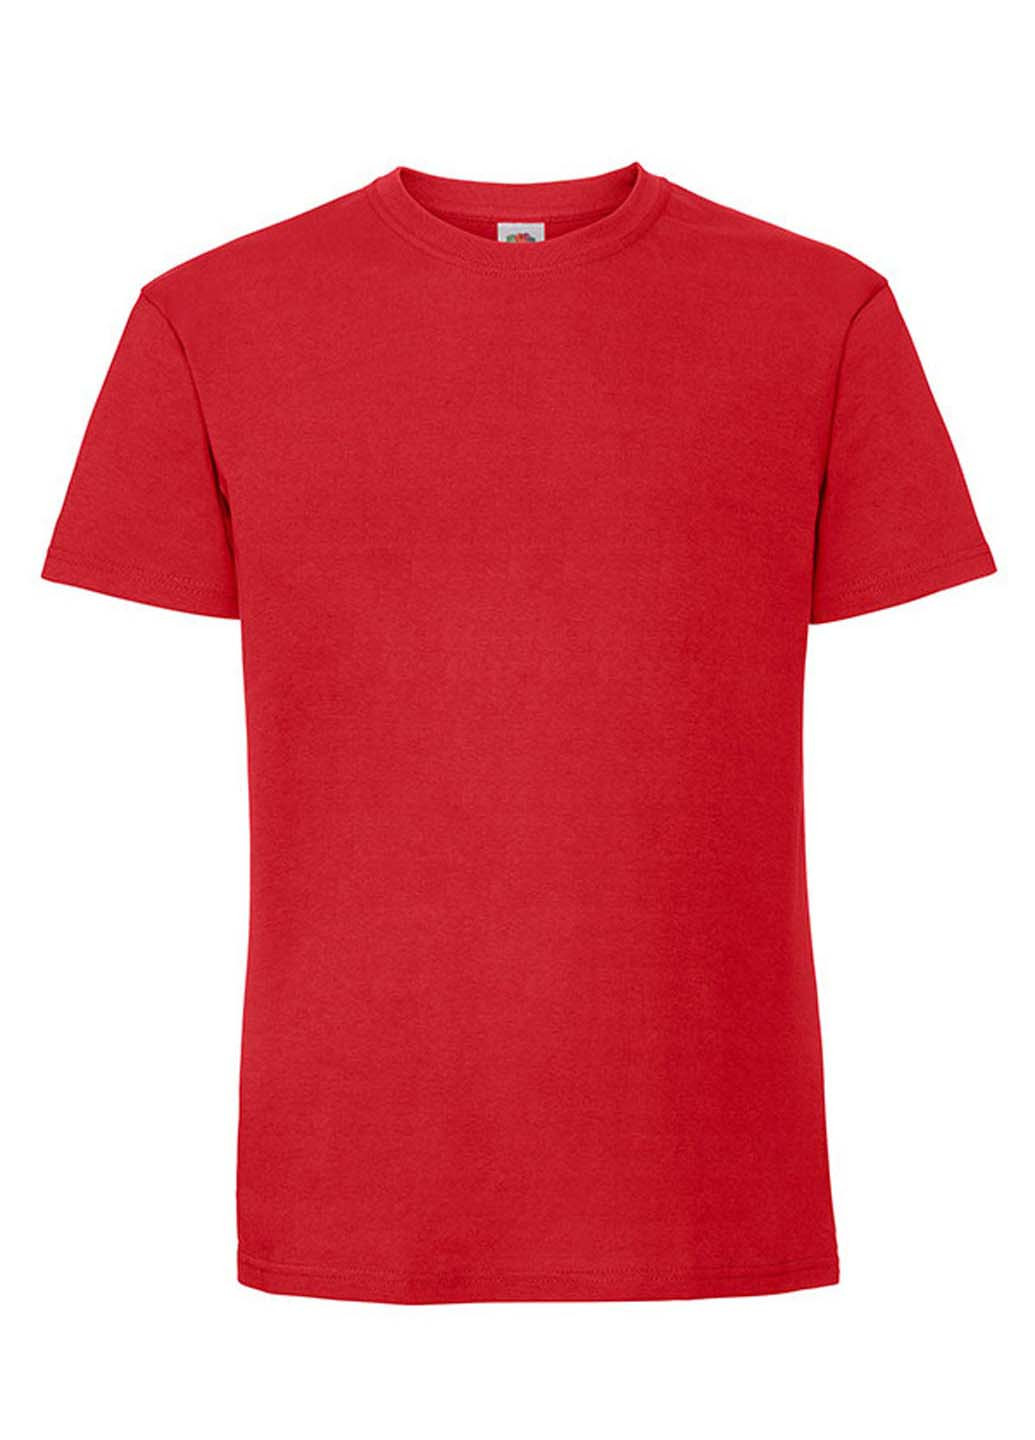 Красная футболка Fruit of the Loom Ringspun premium